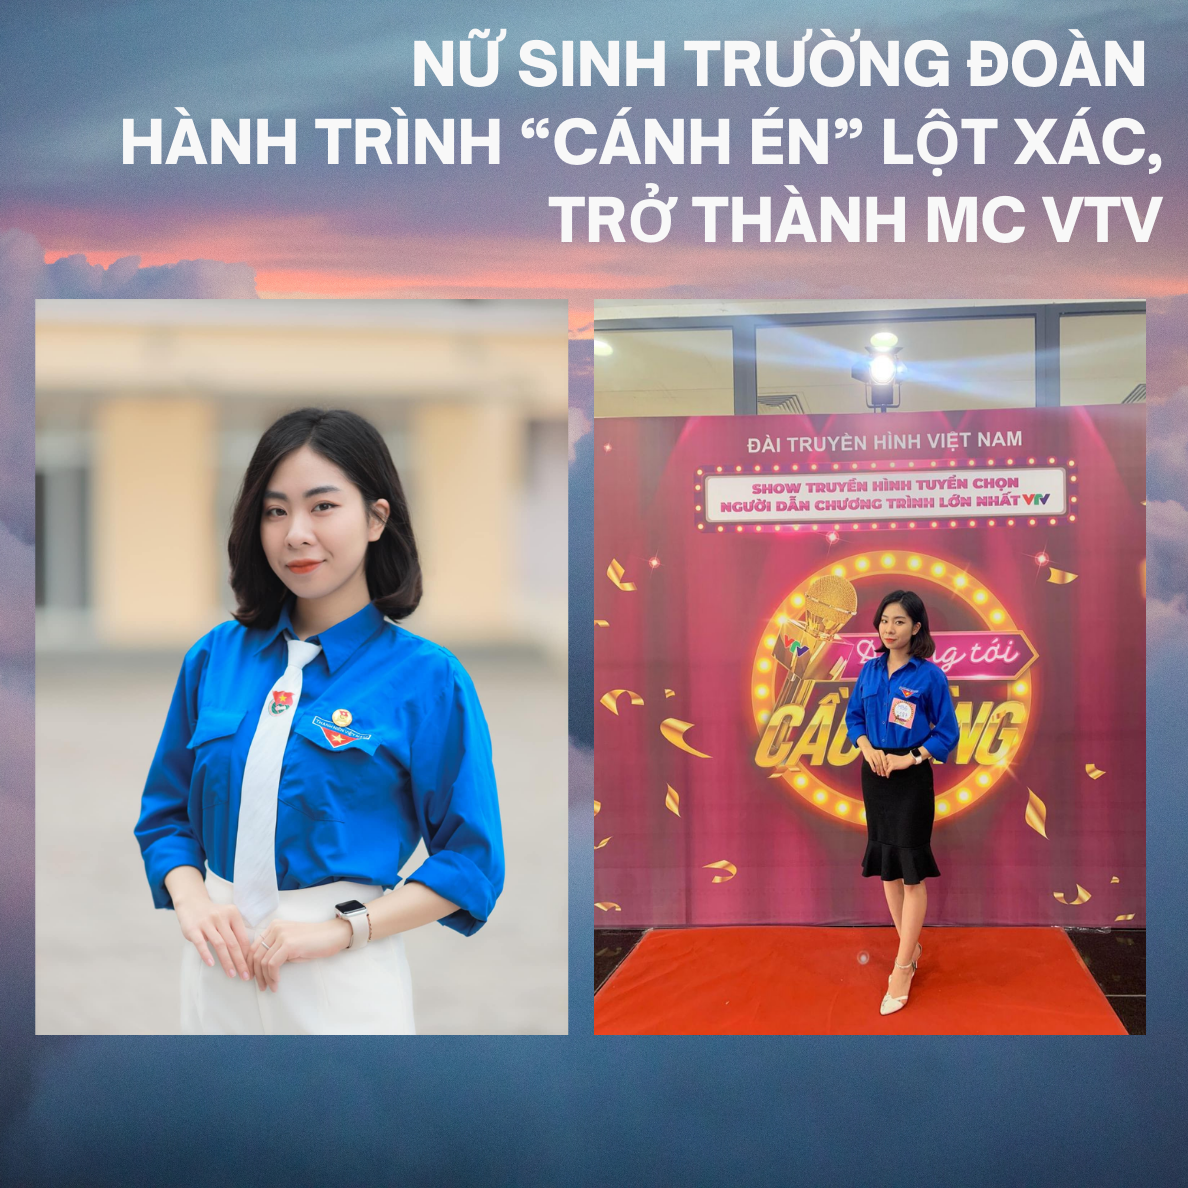 Tâm sự tuổi 20 của nữ sinh trường Đoàn: Hành trình “Cánh én” lột xác, trở thành MC VTV